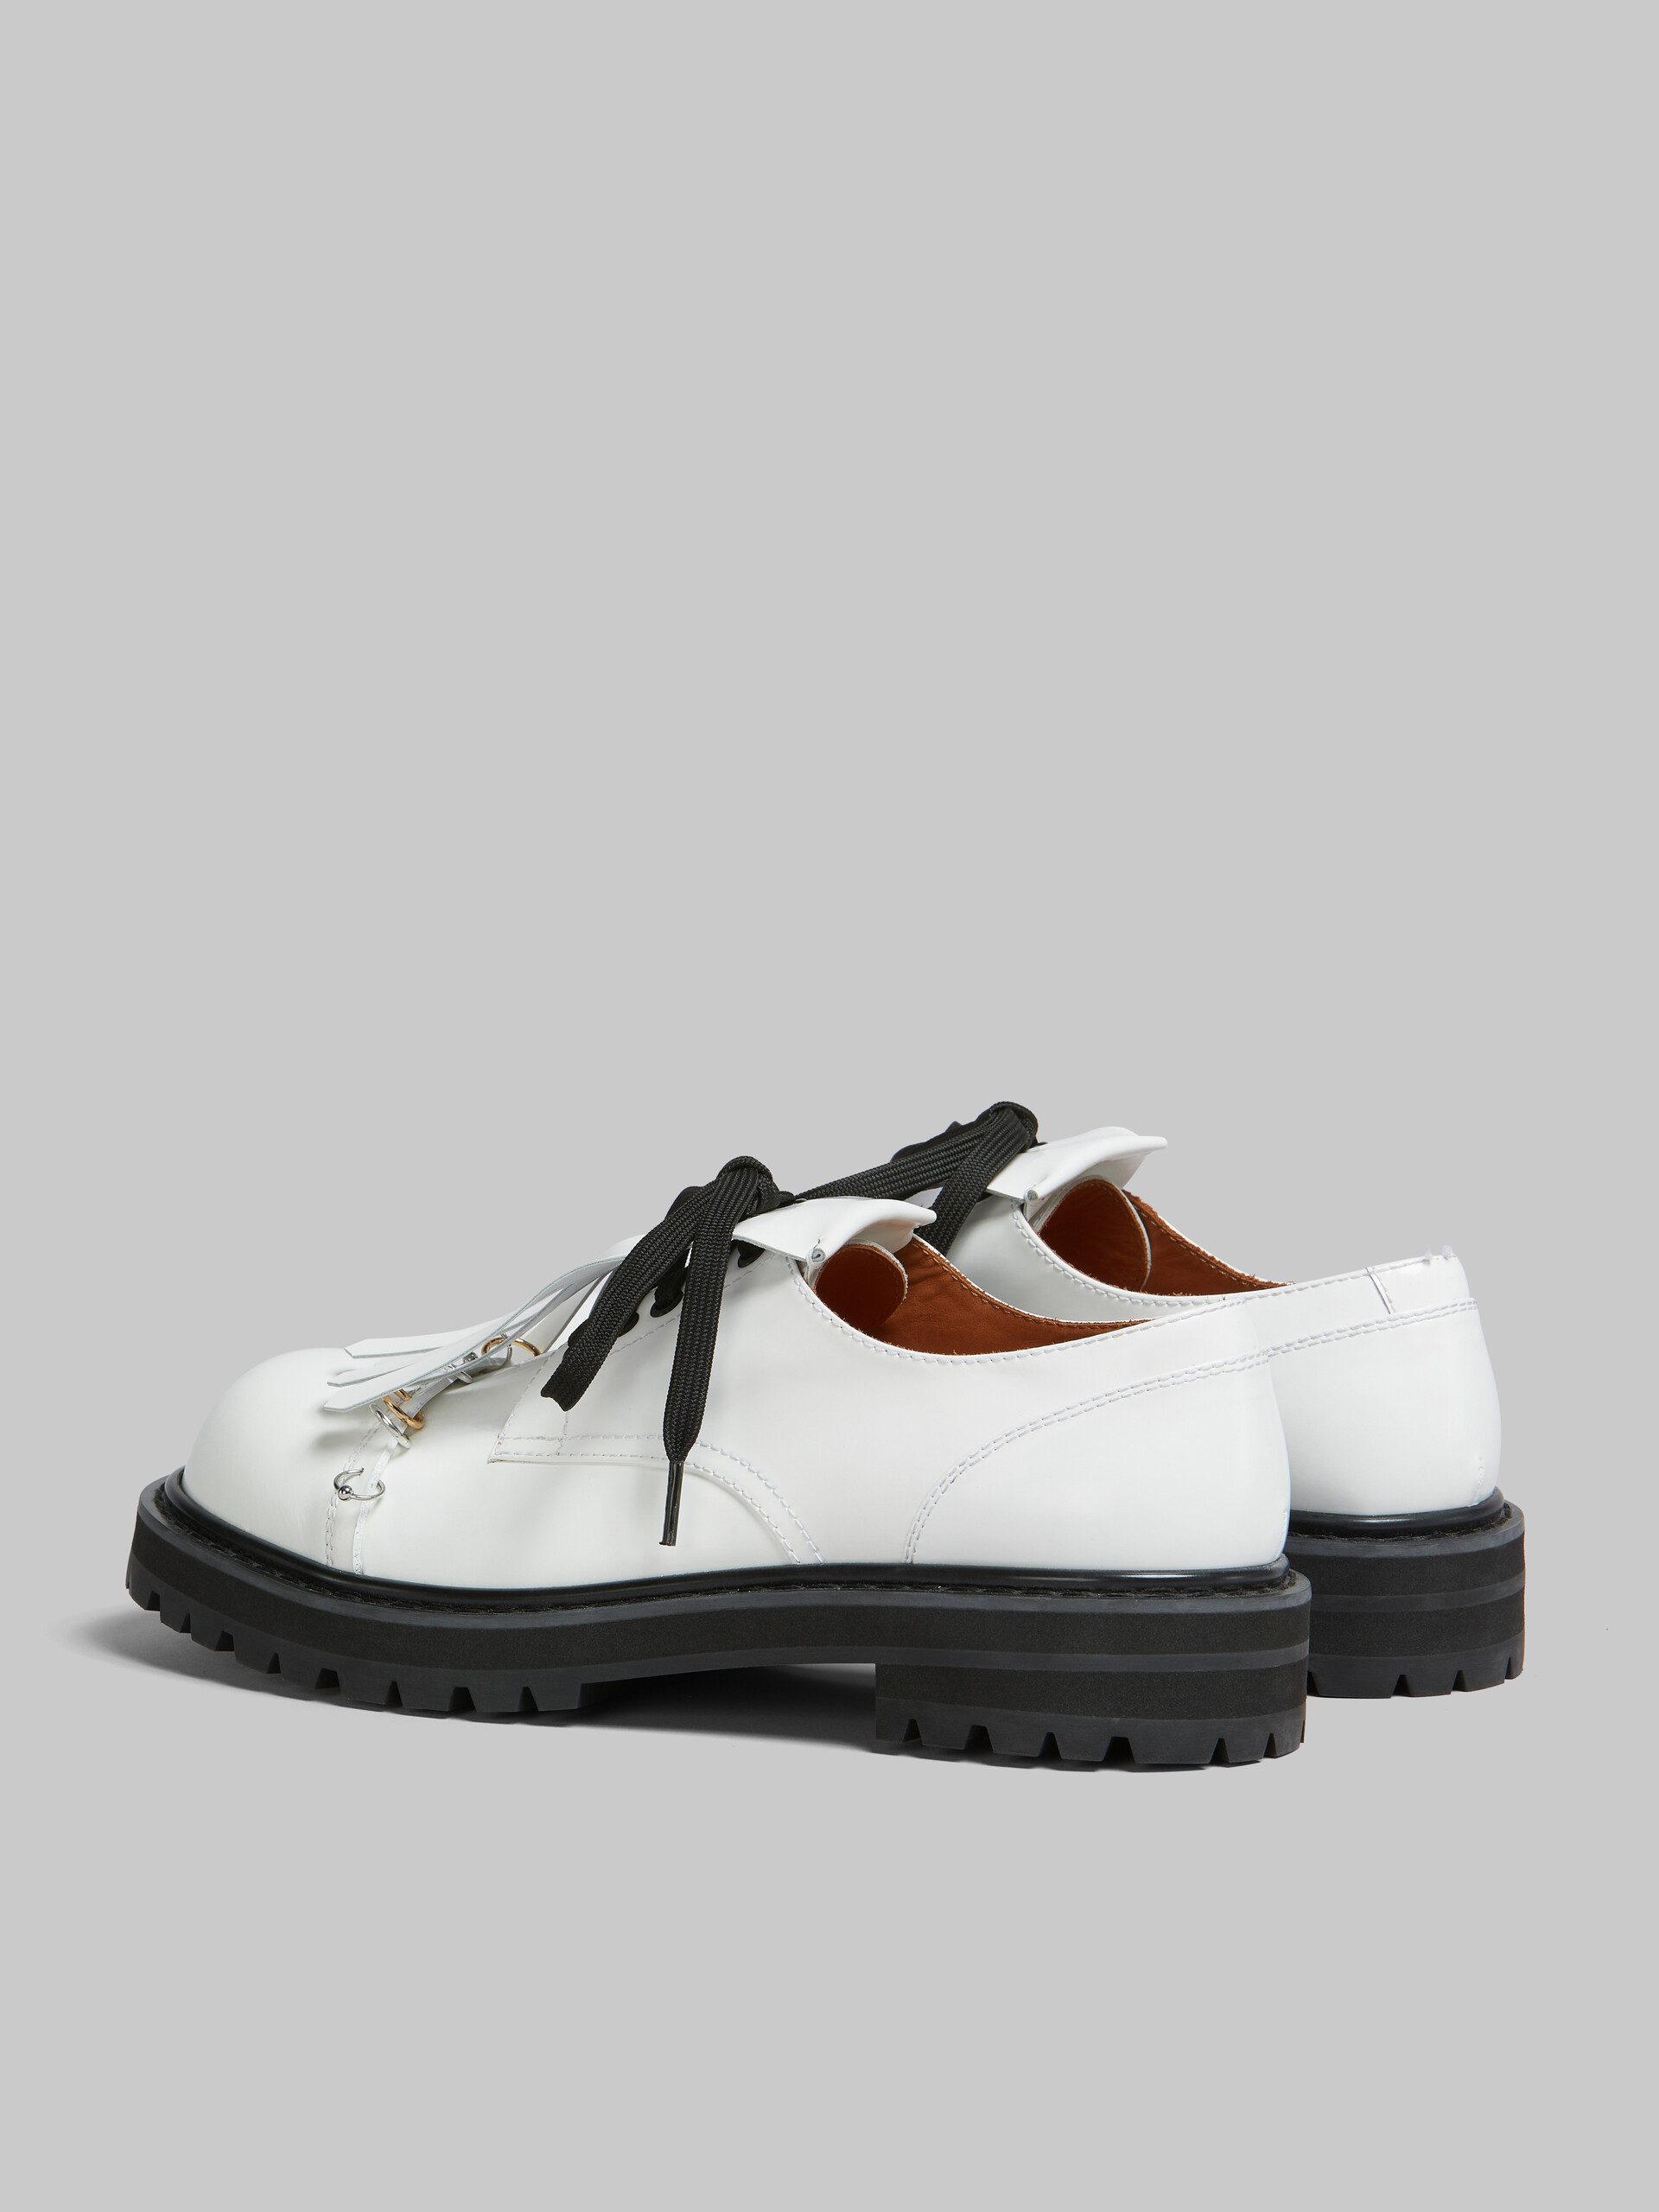 Zapato Derby Dada de piel negra con maxiflecos - Zapatos con cordones - Image 3